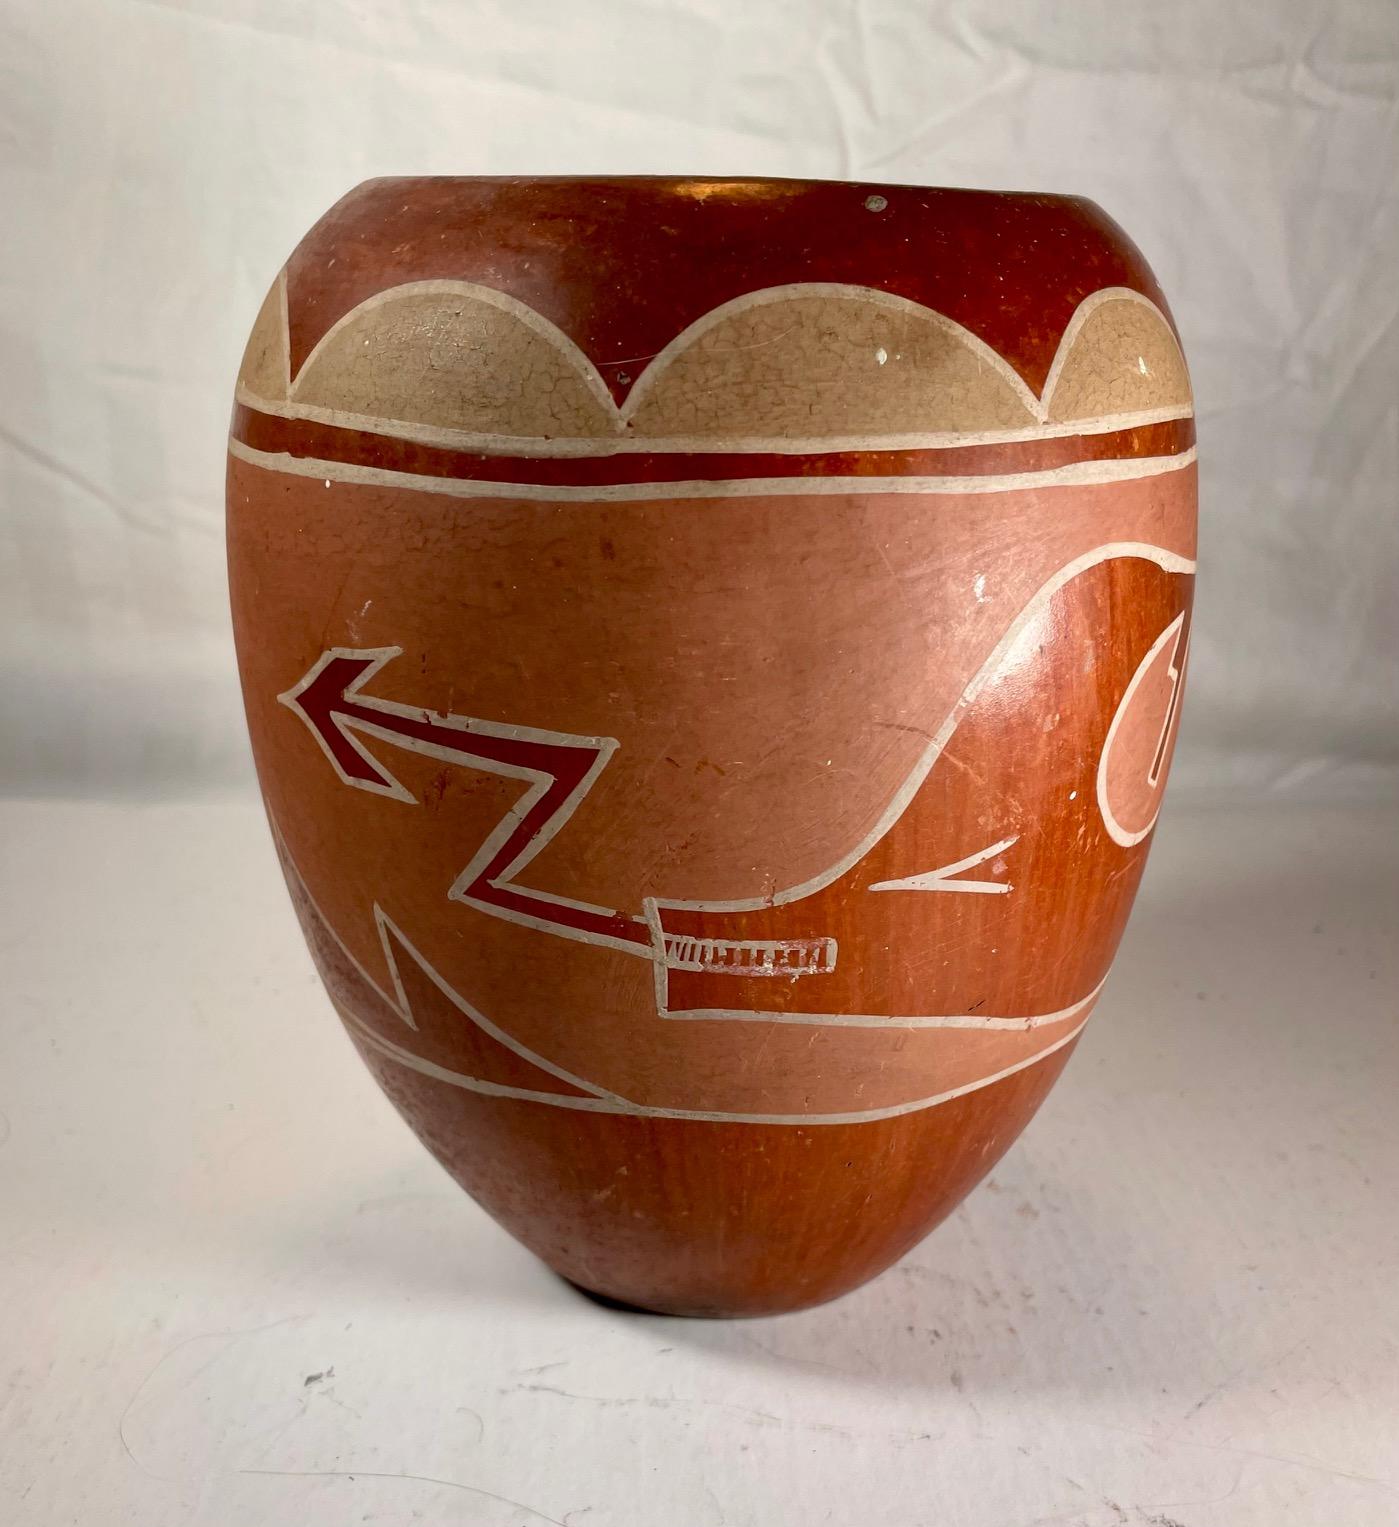 Große Vintage Hopi Pueblo Redware Keramik Krug Scraffito Avanyu Design.

Aufwändig geätztes und vollständig poliertes großes rotes Hopi-San Ildefonso-Keramikgefäß. Das Scraffito der Wasserschlange (Avanyu) ziert den Umfang in einem chamoisfarbenen